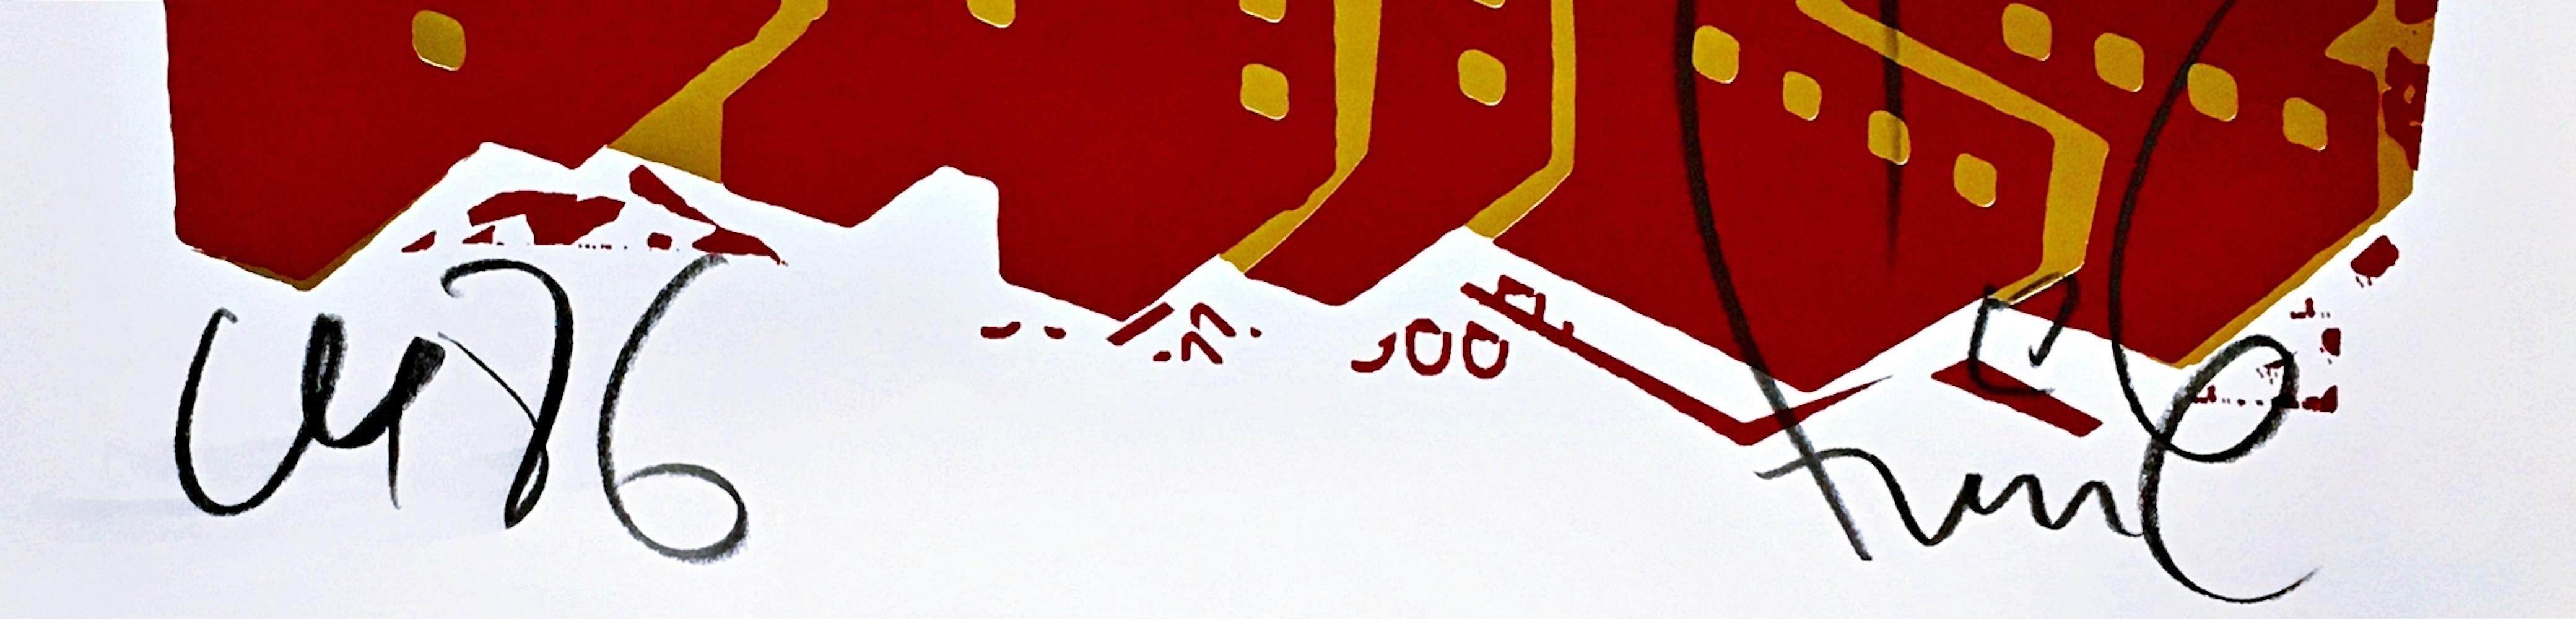 FAILE
Chien rouge, 2018
Impression offset avec feuille d'or sur papier Lenox 100. Timbre du studio Faile au dos de l'appareil
Annotée et signée au crayon en bas du recto, avec le cachet de l'atelier au verso.
28 × 22 pouces
Non encadré
Le chien